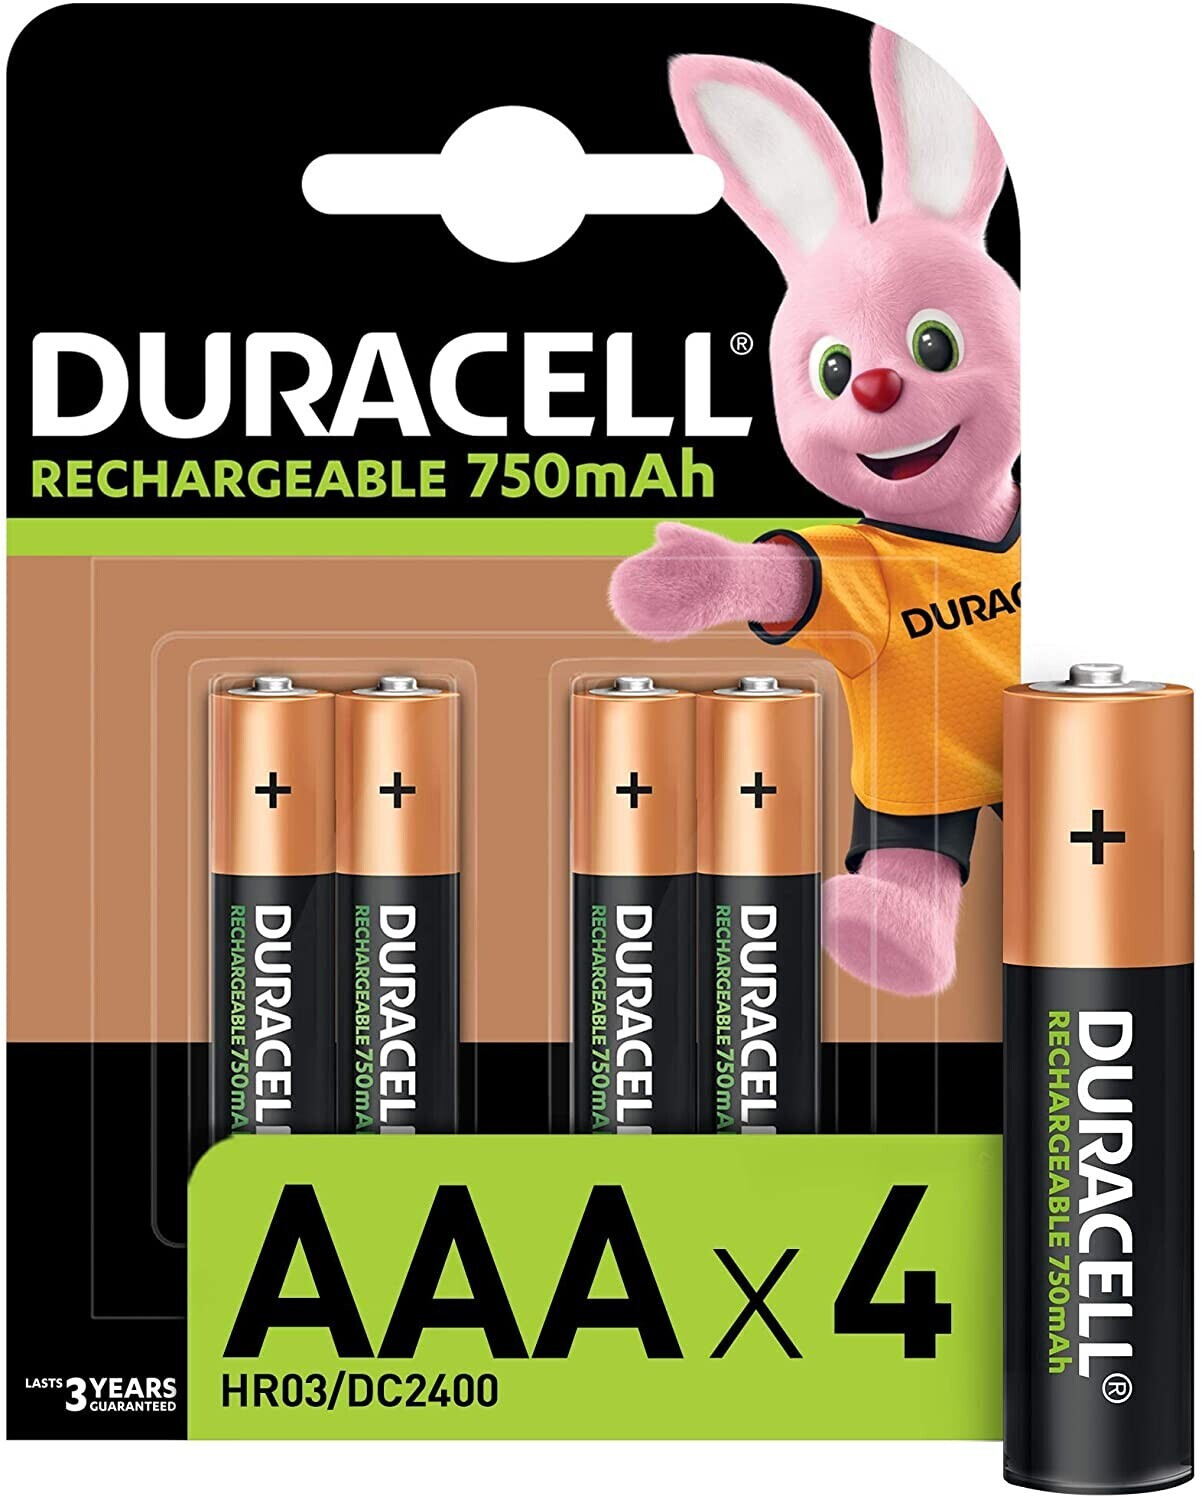 Duracell Rechargeable AAA 750 mAh Batteries, Pack of 4 au meilleur prix sur